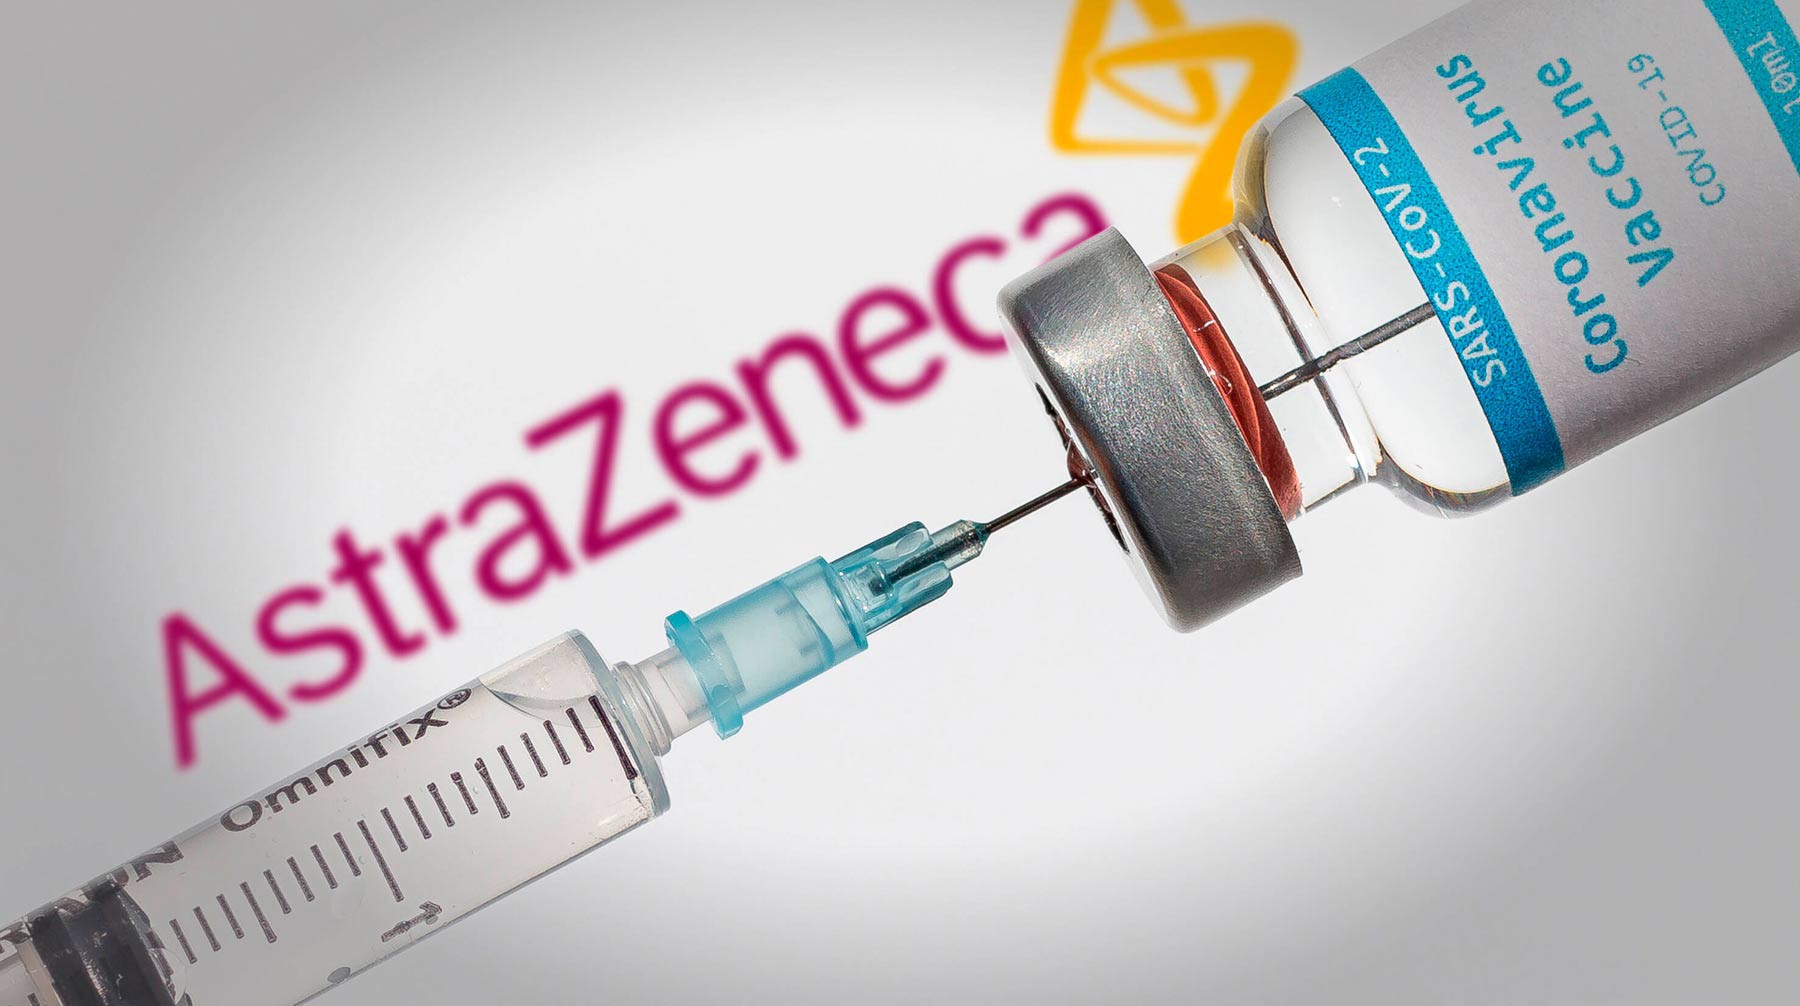 Dailystorm - Британская вакцина AstraZeneca показала эффективность на 22% меньше российской «Спутник V»